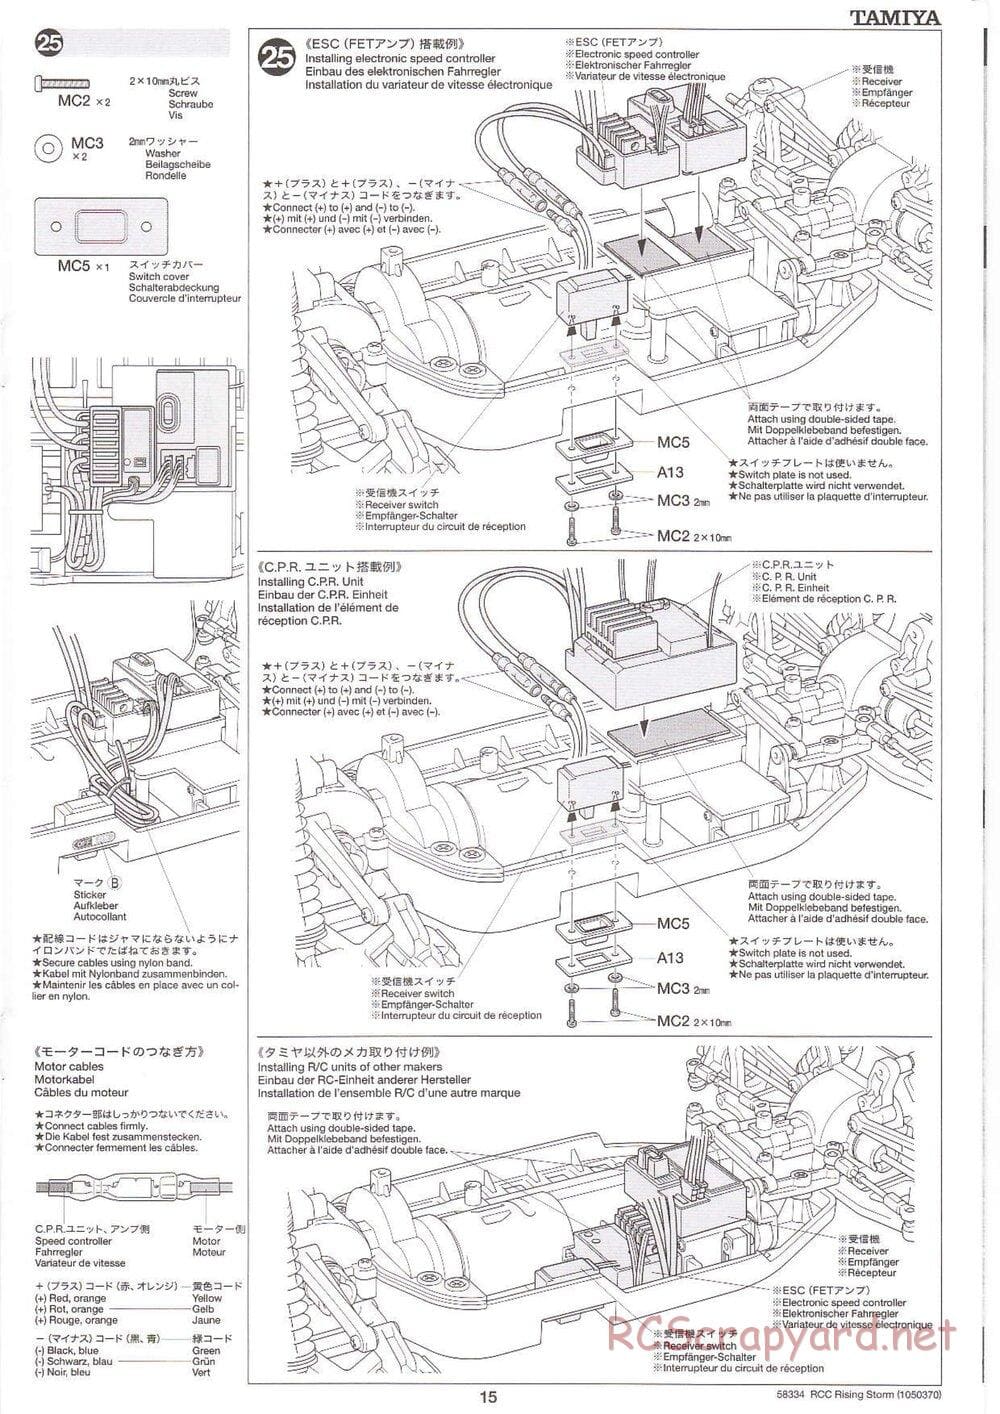 Tamiya - Rising Storm Chassis - Manual - Page 15